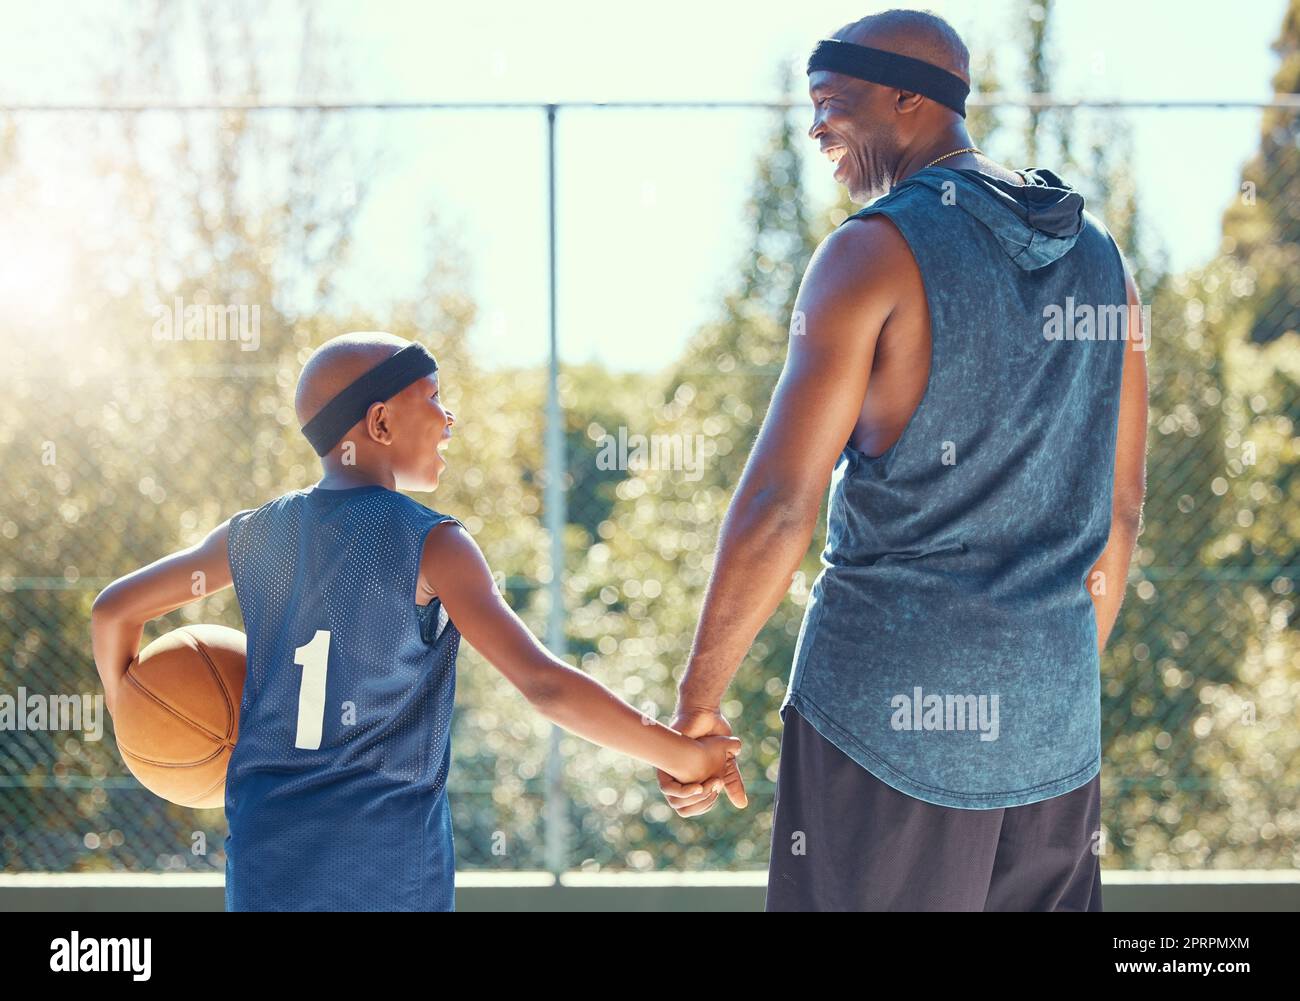 Basketball, Familie und Sport mit einem Vater und Sohn trainieren draußen für Fitness und Spaß. Kinder, Sport und Training mit einem Vater und Jungen, die Korbball für Gesundheit und Erholung spielen Stockfoto